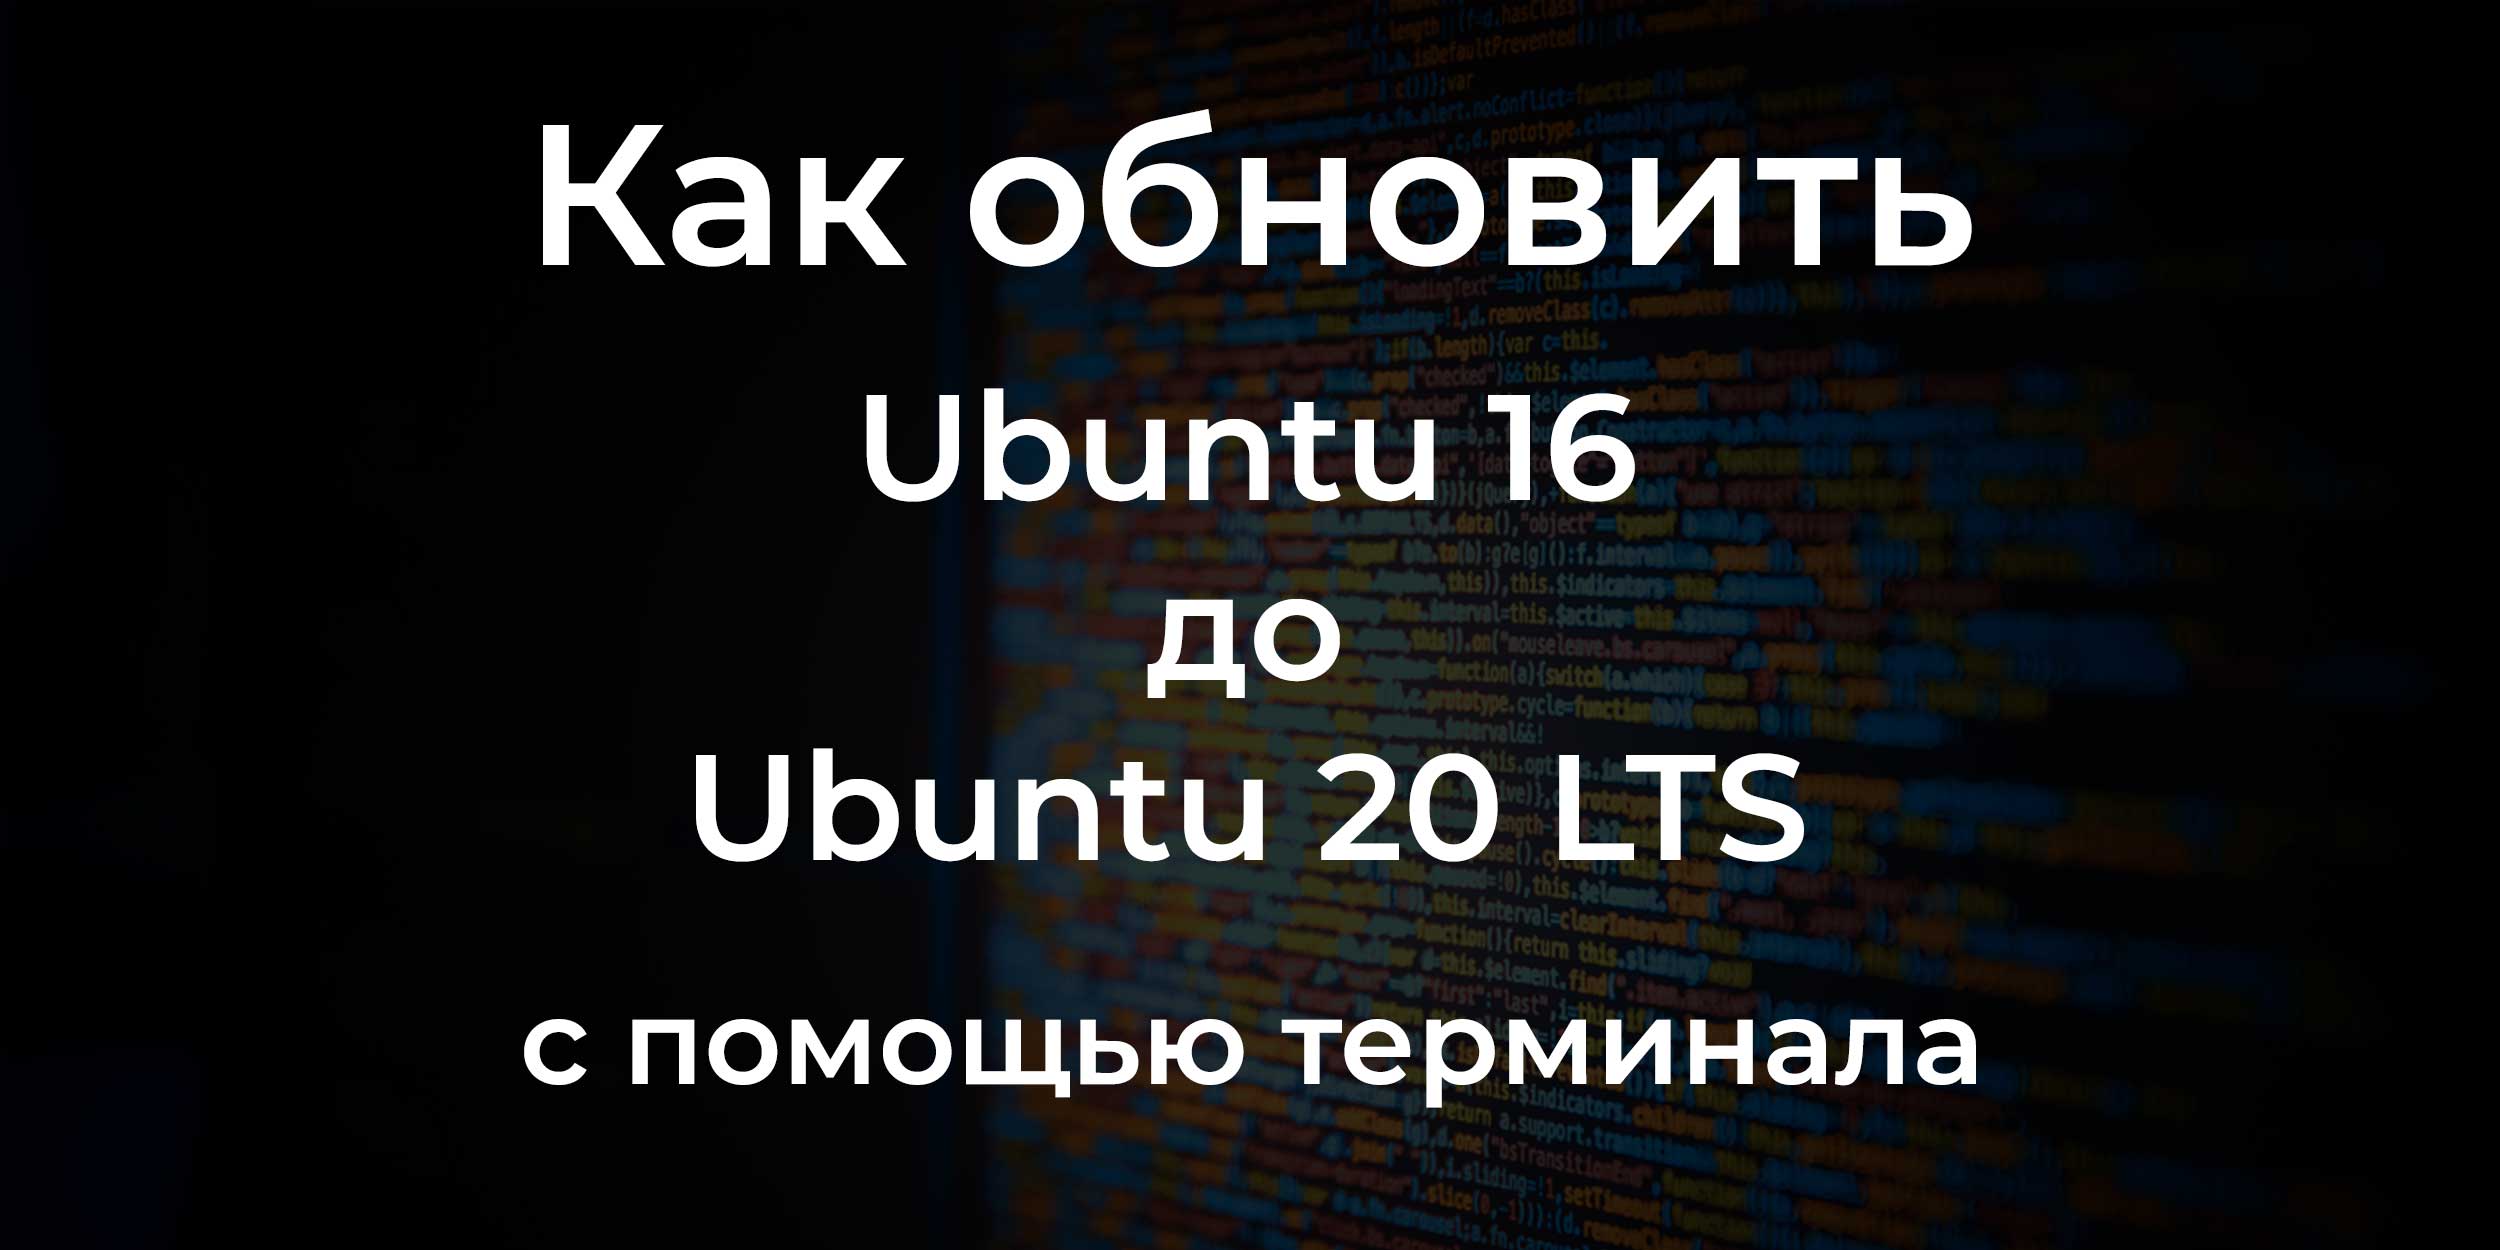 Как обновить Ubuntu 16 до Ubuntu 20 LTS с помощью терминала?